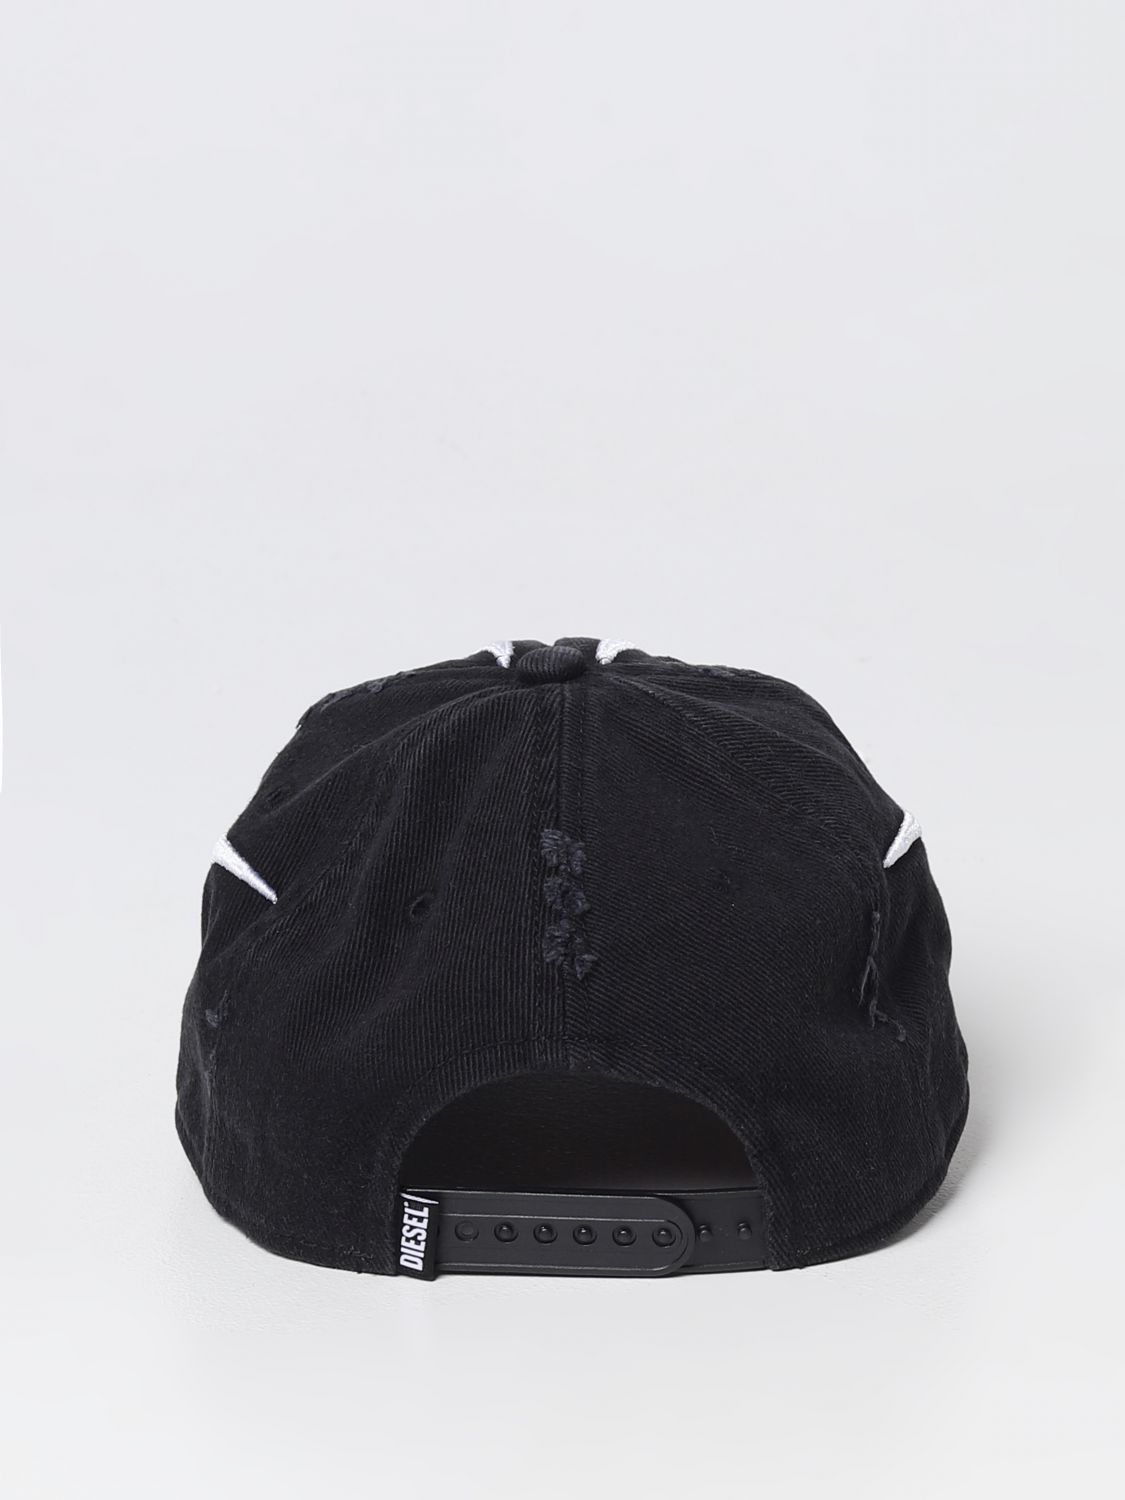 DIESEL: C-Ayrton hat in cotton - Black | Diesel hat A095700HERJ